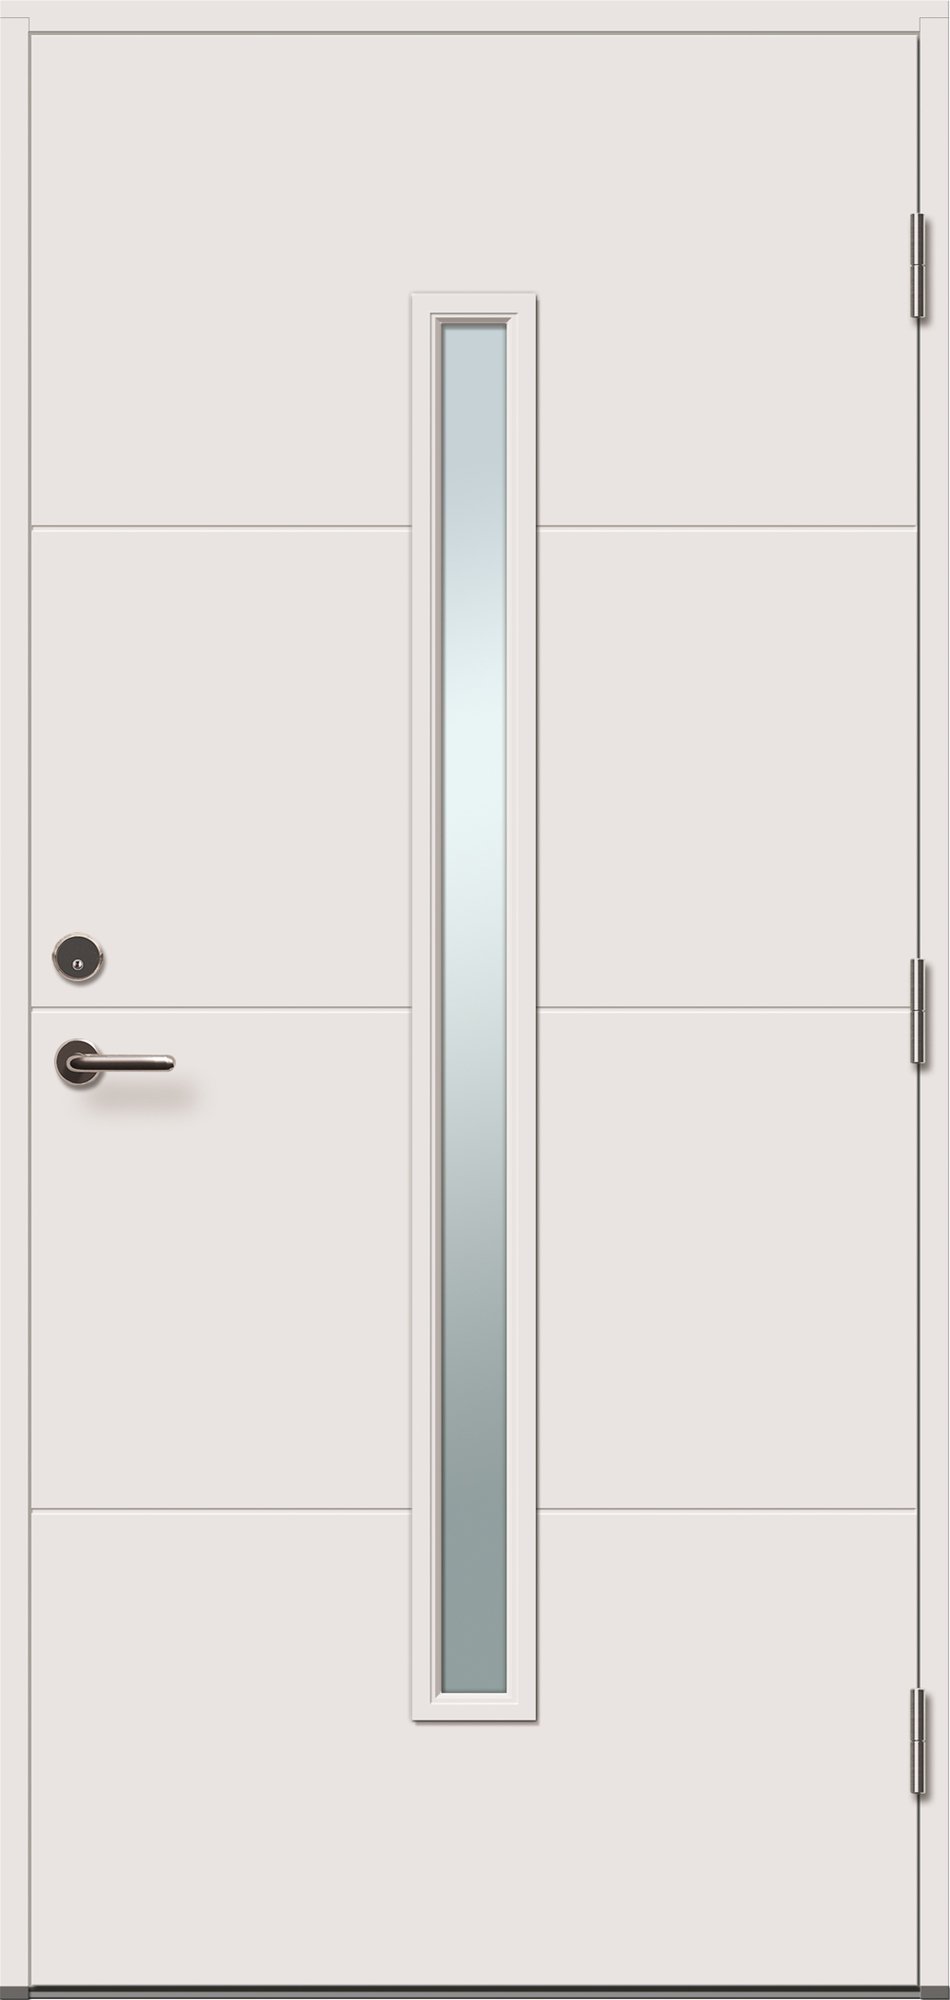 Lauko durys VILJANDI STORO 1R, balta sp., 890 x 2088 mm, kairė